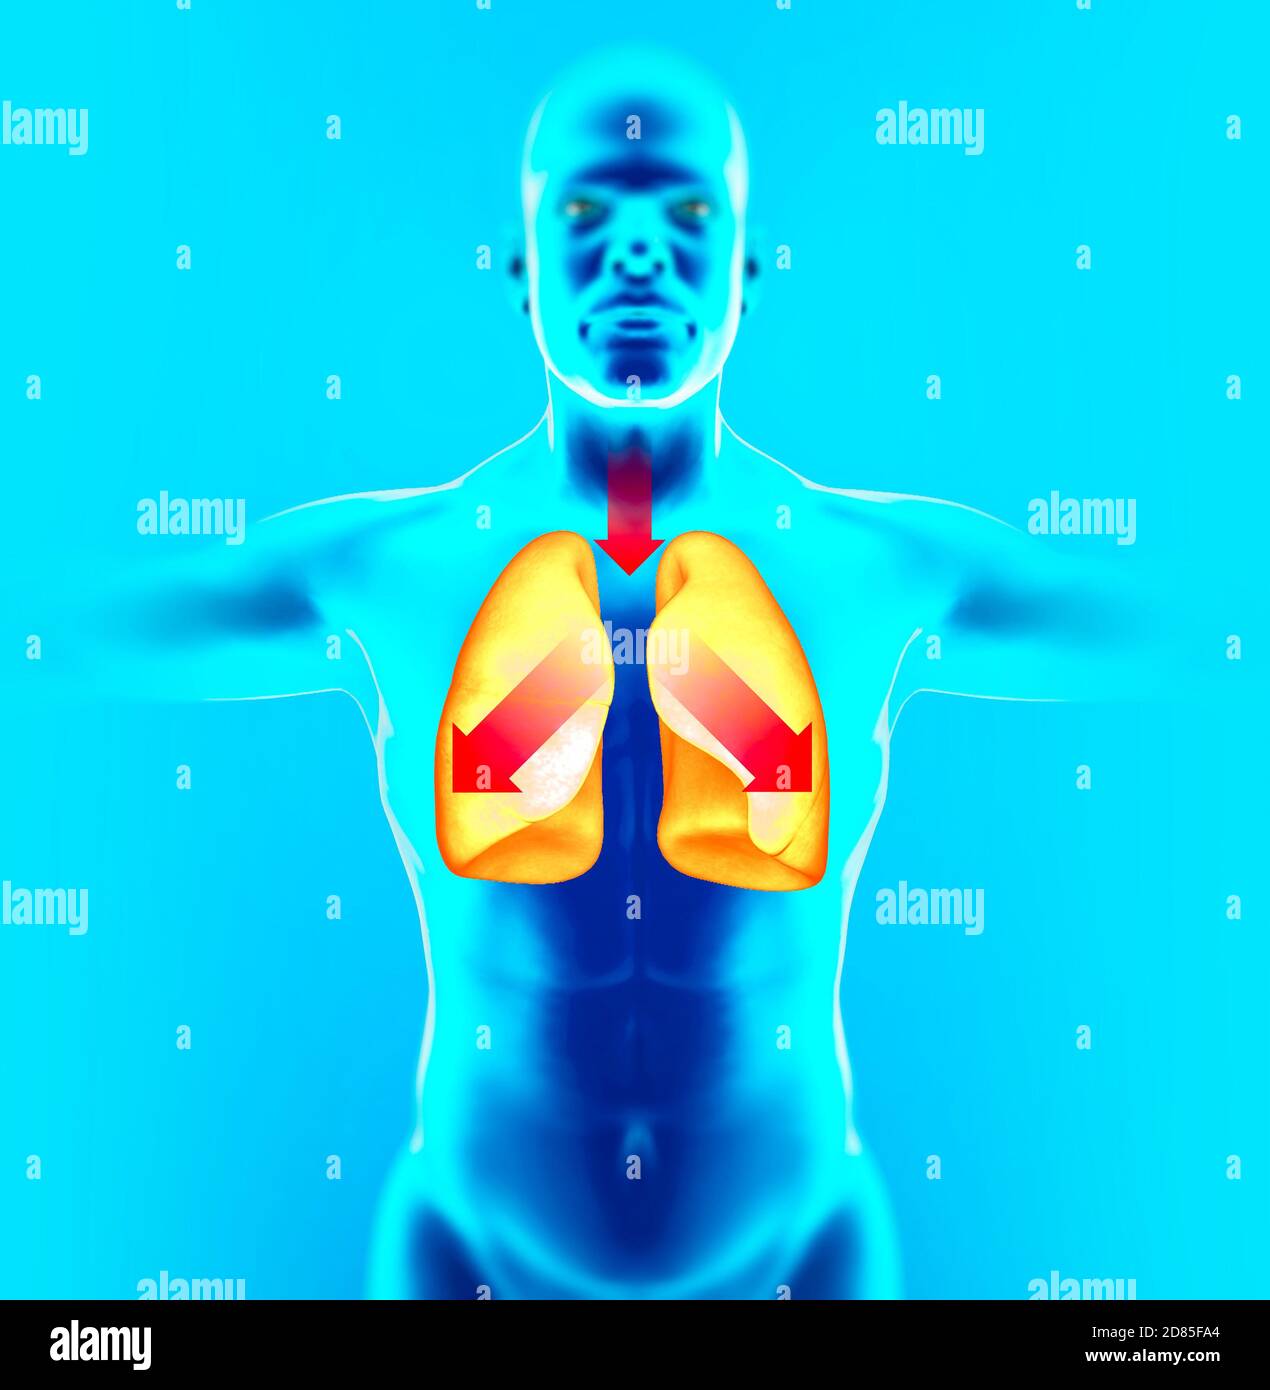 Anatomie des menschlichen Körpers, Lunge und Husten. Arzneimittel zum Lösen von Schleim. Wirkung von Schleim, der sich in den Atemwegen ansammelt. 3d-Rendering Stockfoto